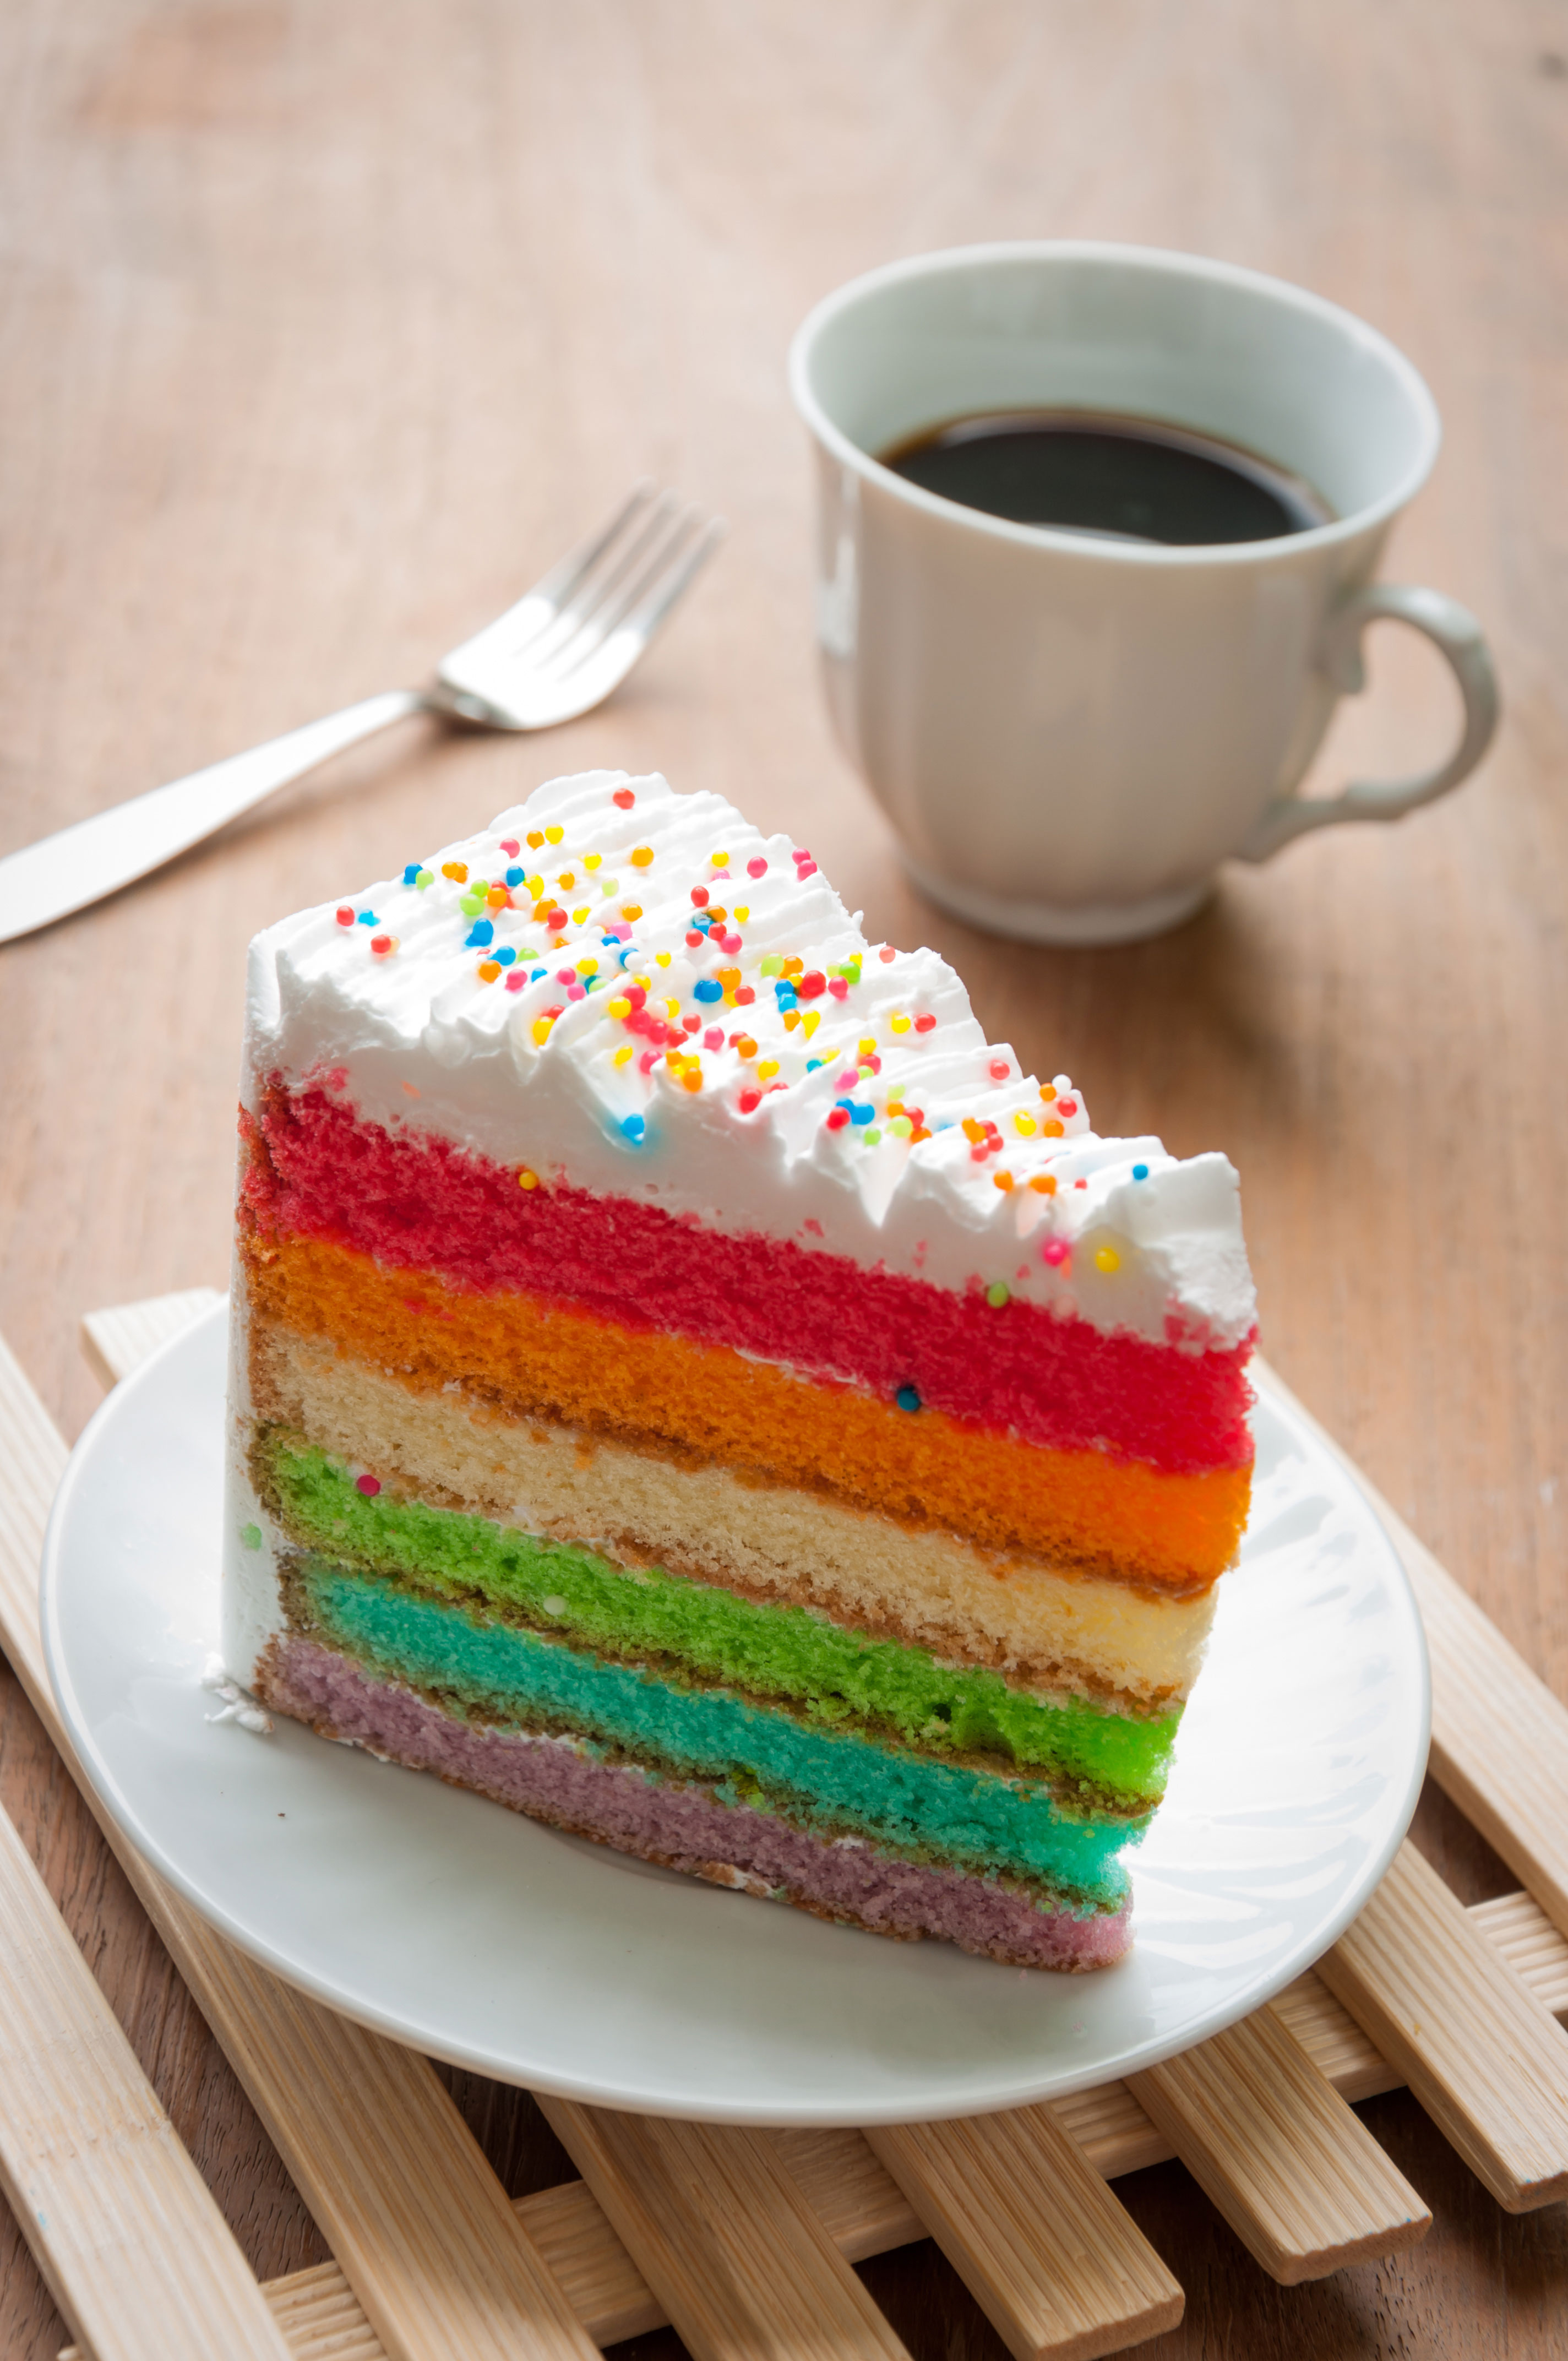 Recette du Rainbow cake / Gâteau Arc-en-ciel